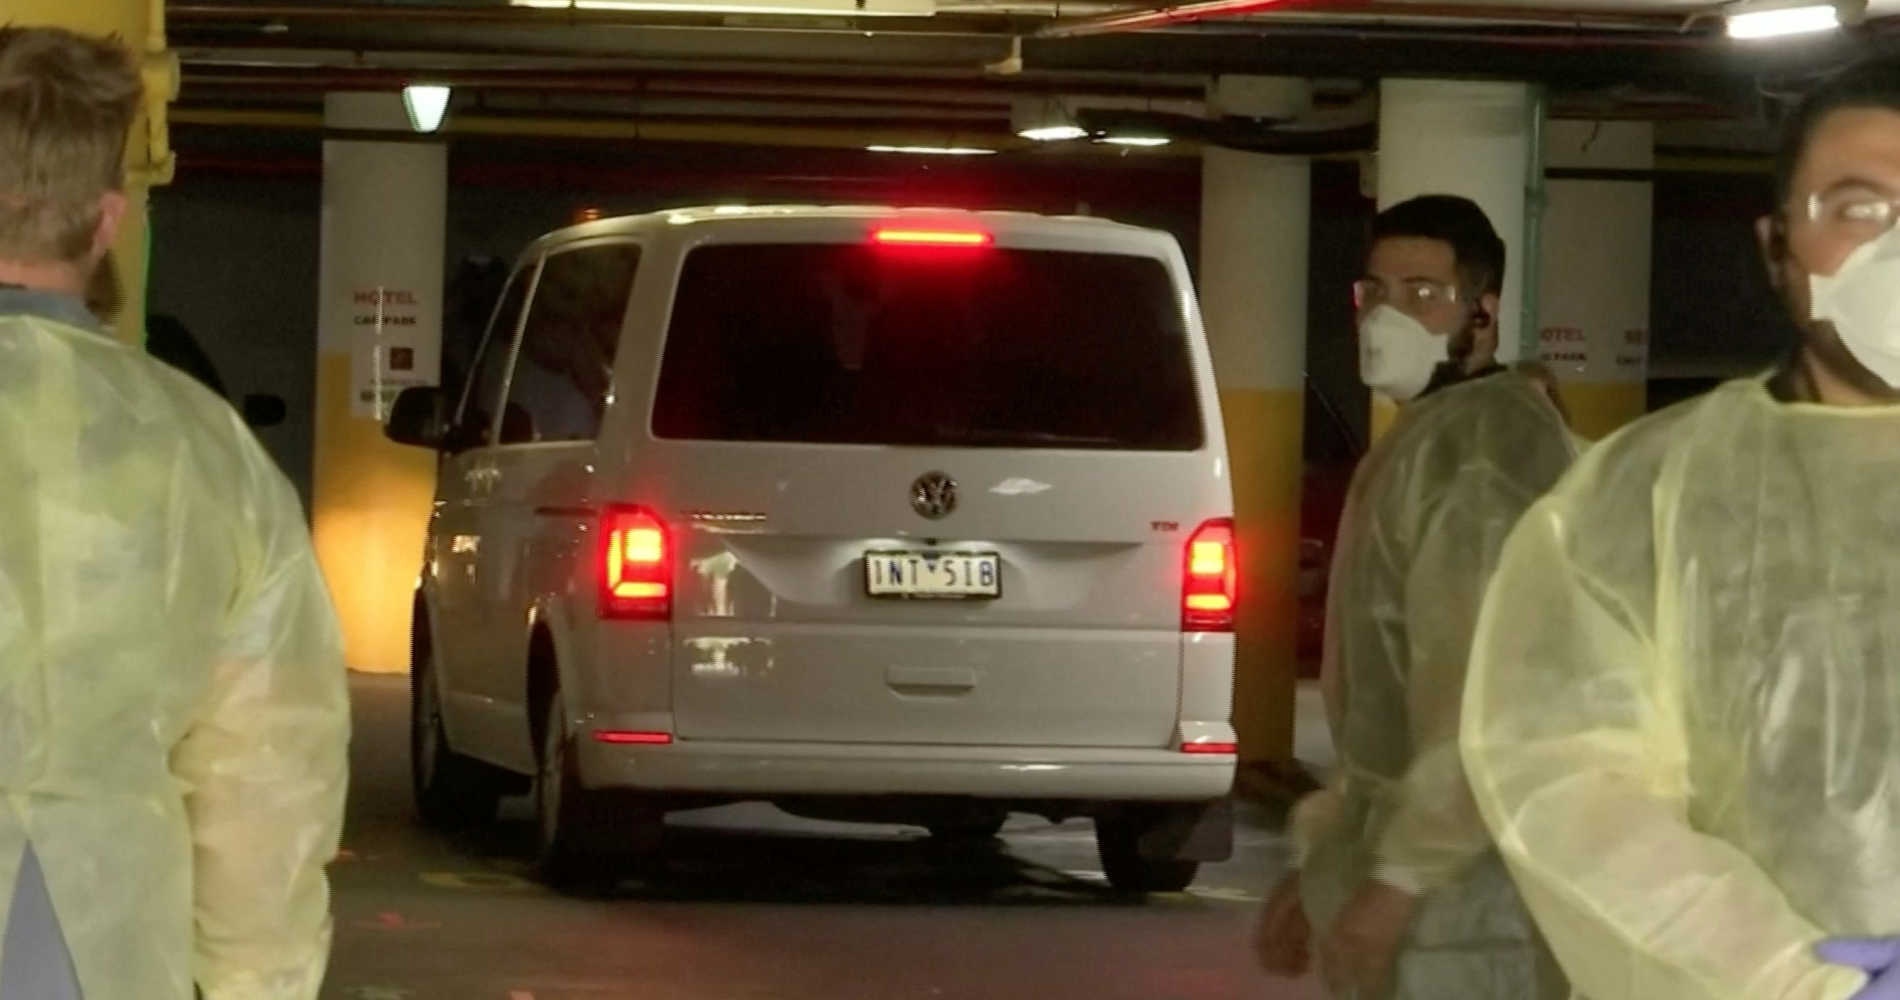 Van with Novan Djokovic inside, Melbourne, 2021